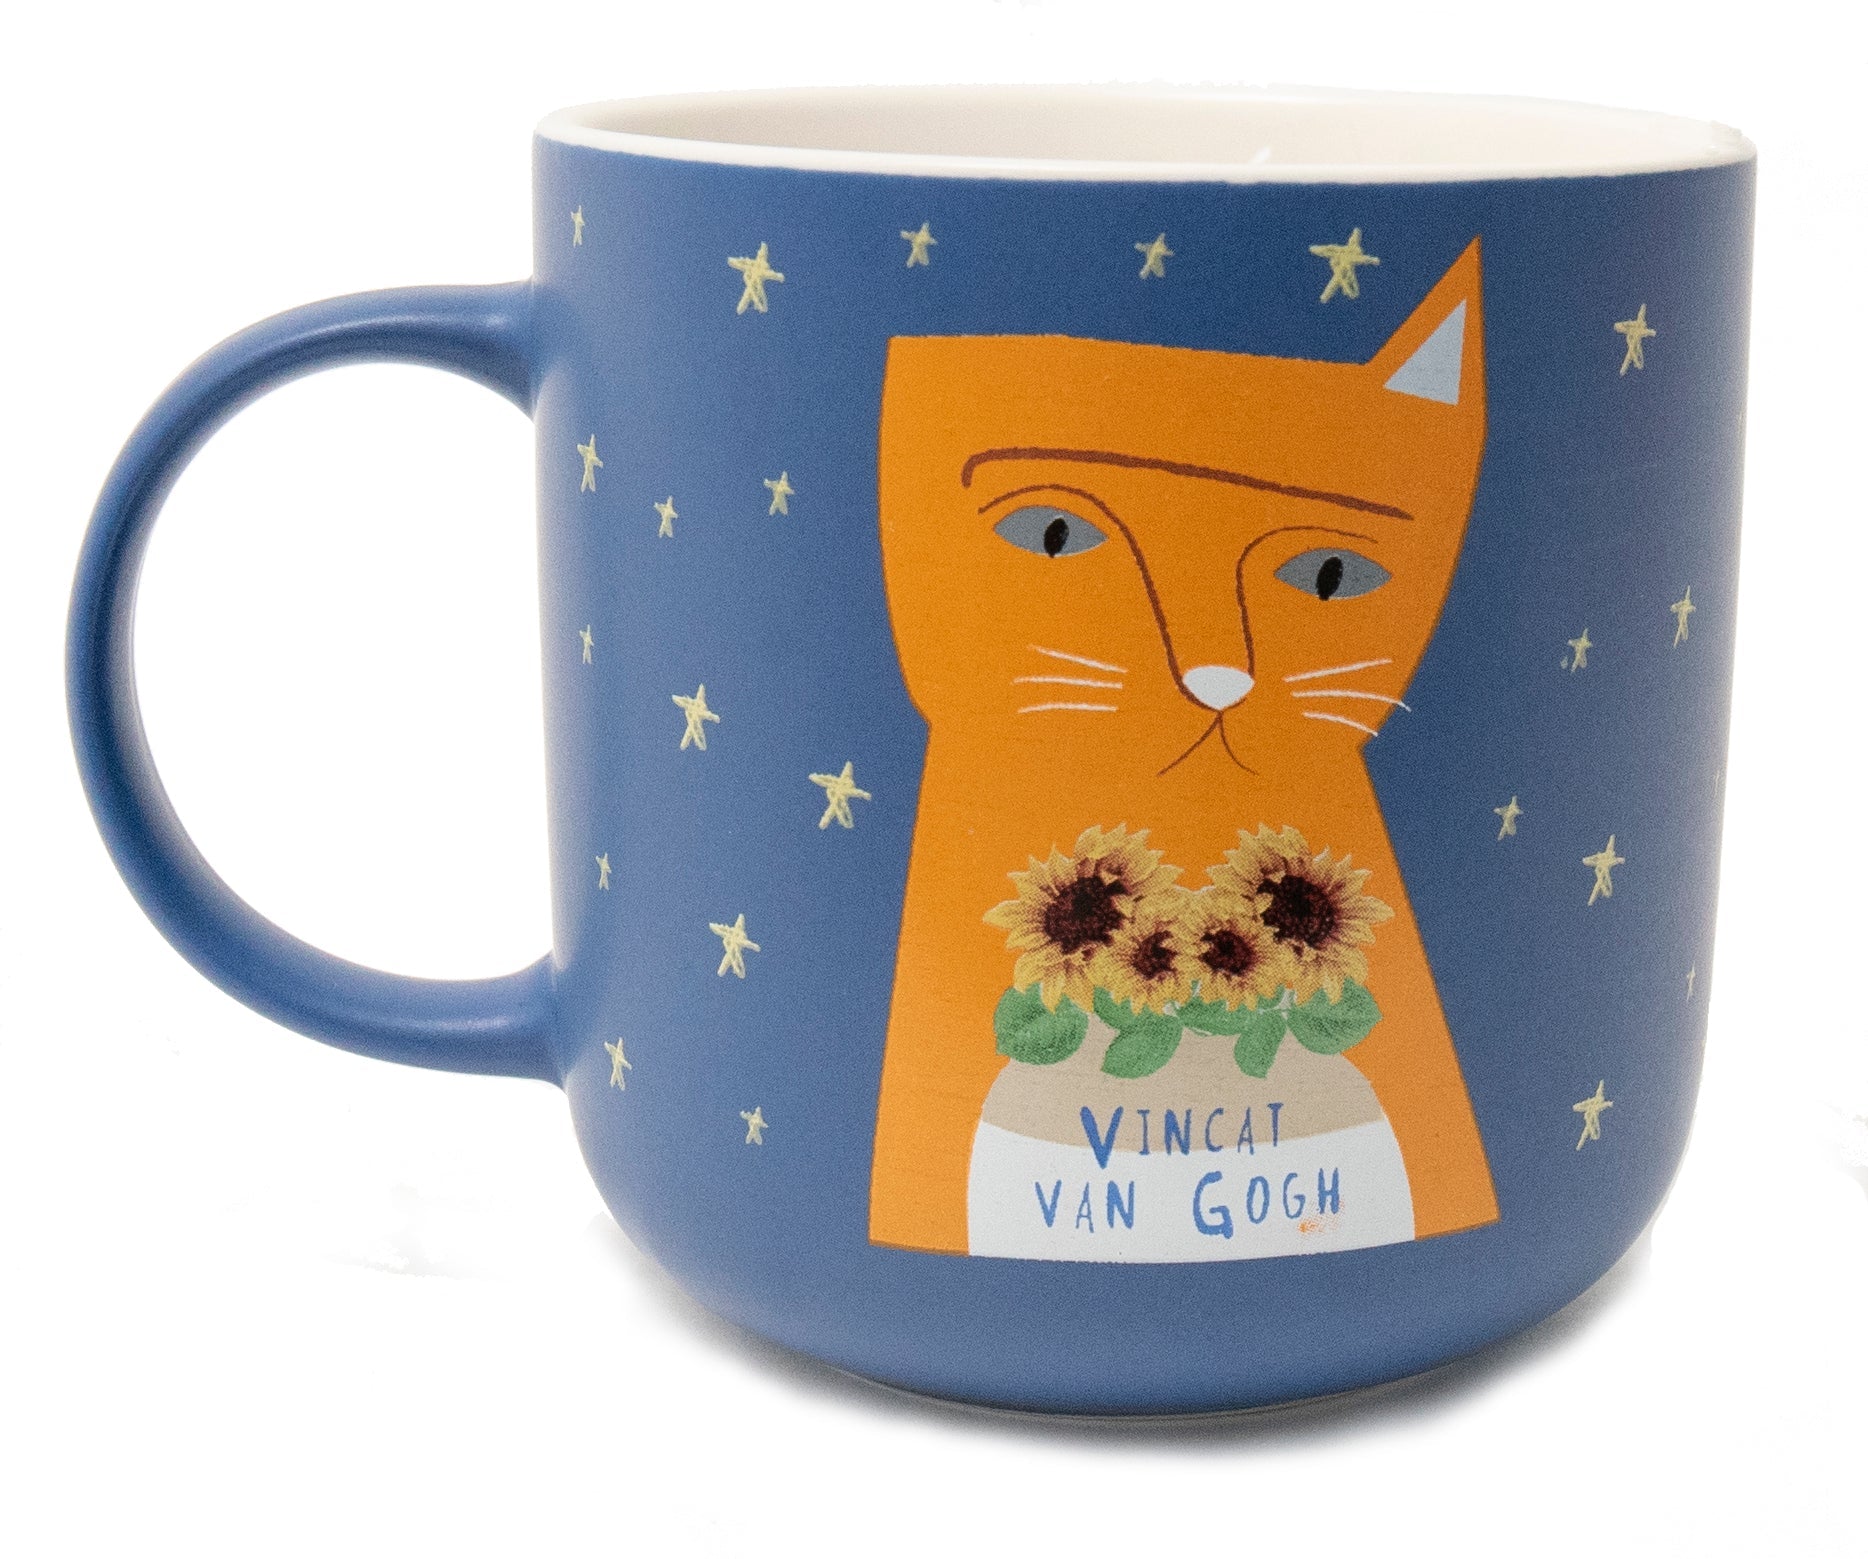 Vincat van Gogh Bone China Cup by Twigseeds - Mug